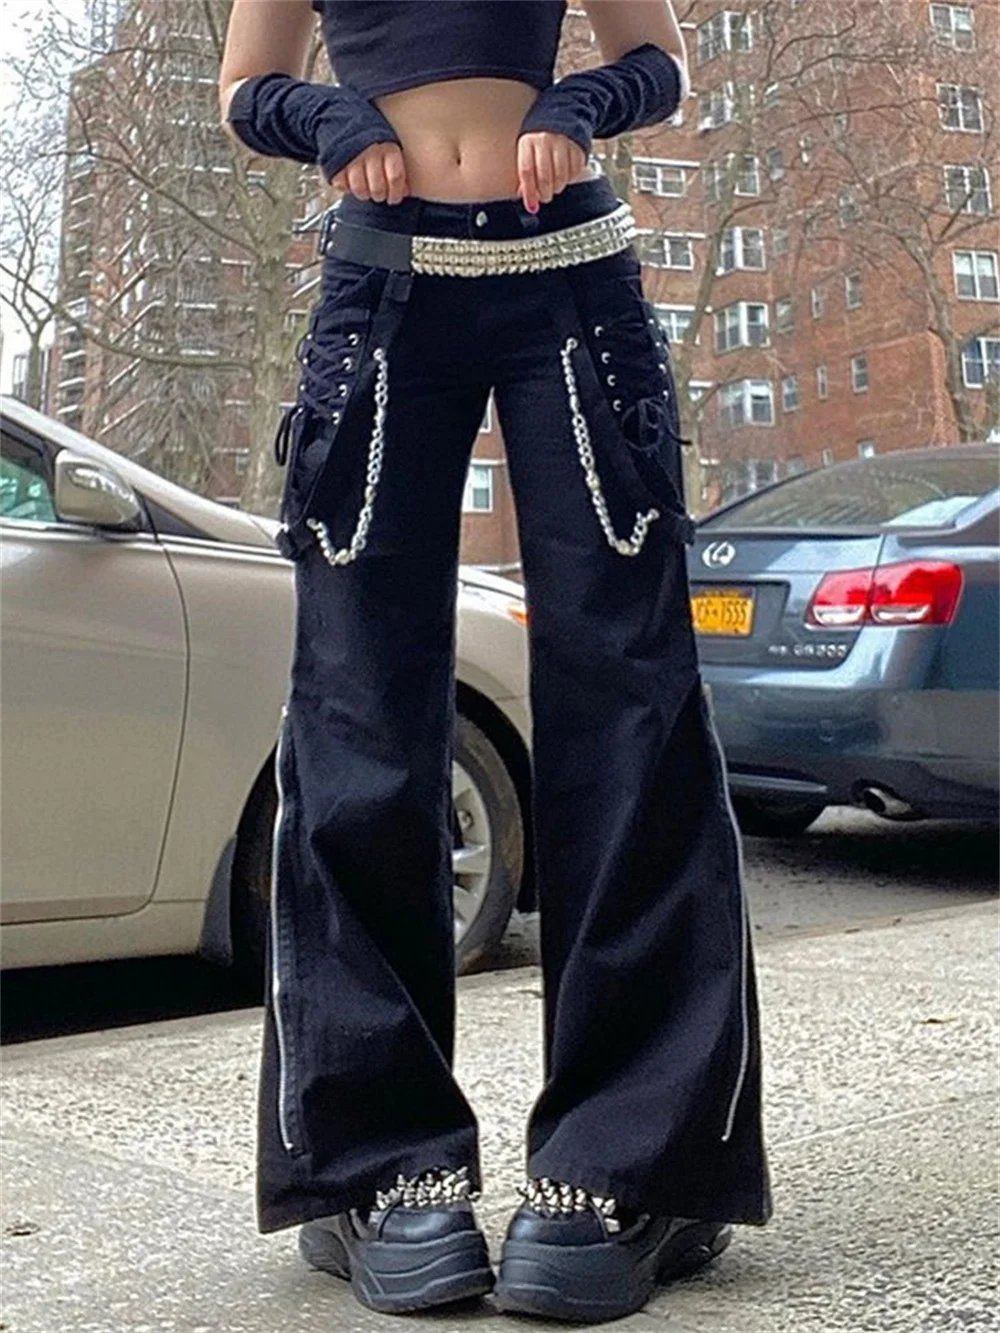 Gotik Alt siyah kargo pantolon zincir kaya serseri siber Techwear pantolon kadınlar için düşük bel Jogger kravat geniş bacak pantolon cyberpunk pantolon